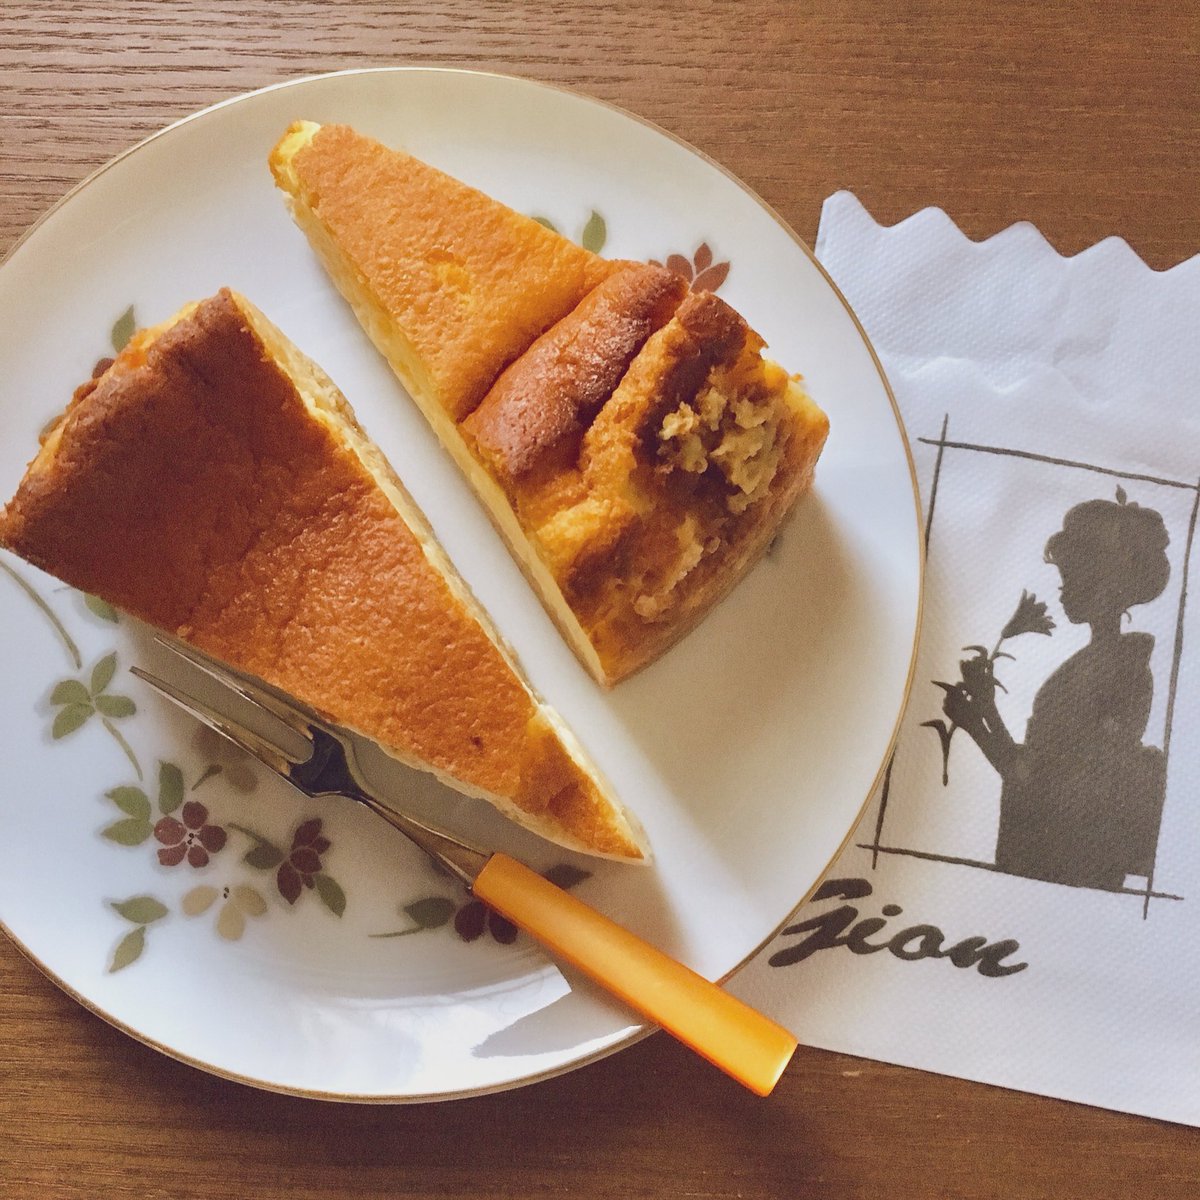 みんなの 珈琲西武 チーズケーキ テイクアウト 口コミ 評判 食べたいランチ 夜ごはんがきっと見つかる ナウティスイーツ